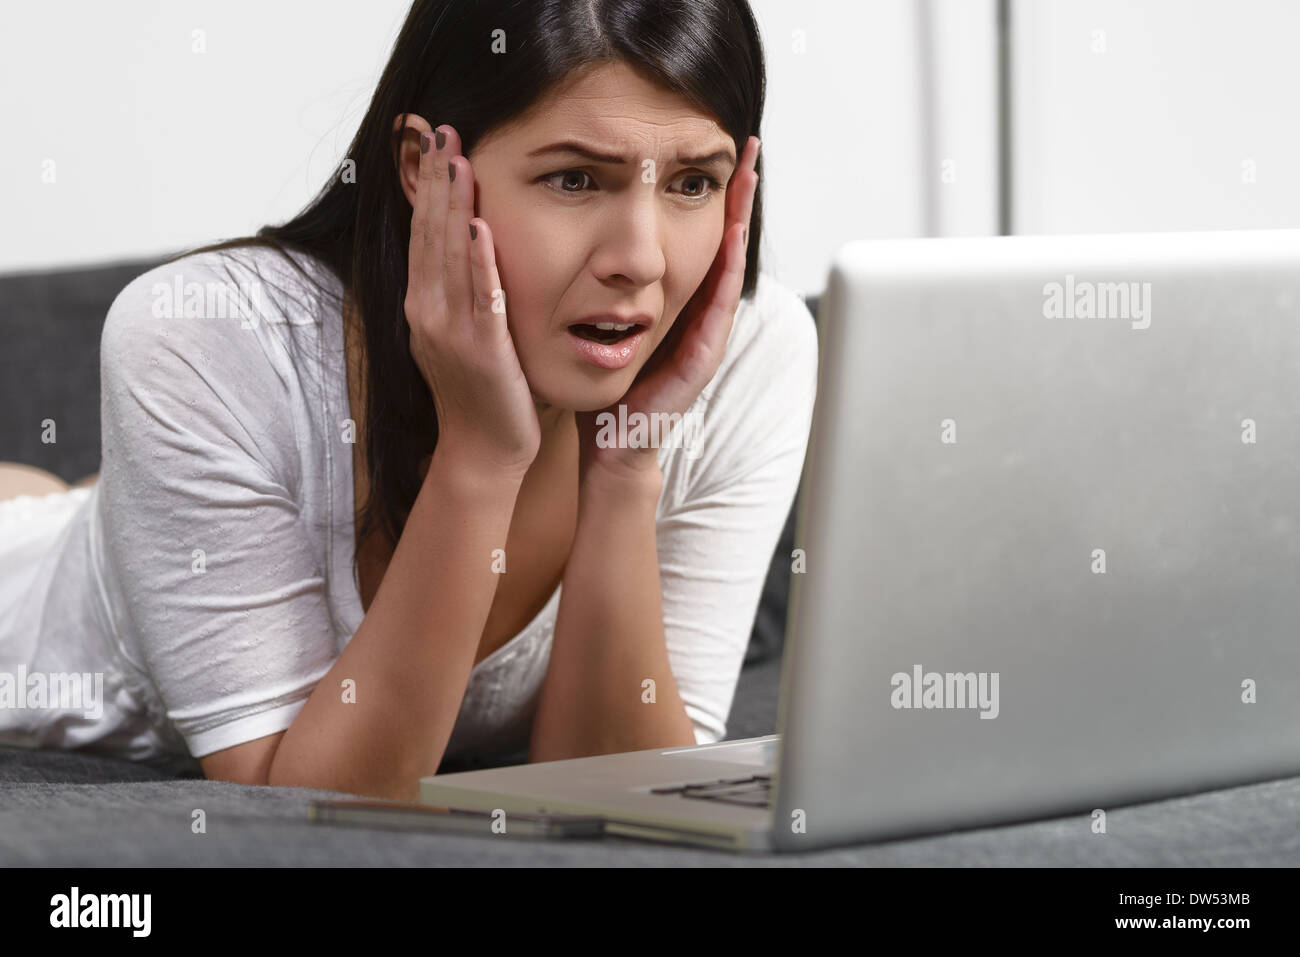 Mujer mirando su portátil en una expresión horrorizada Foto de stock